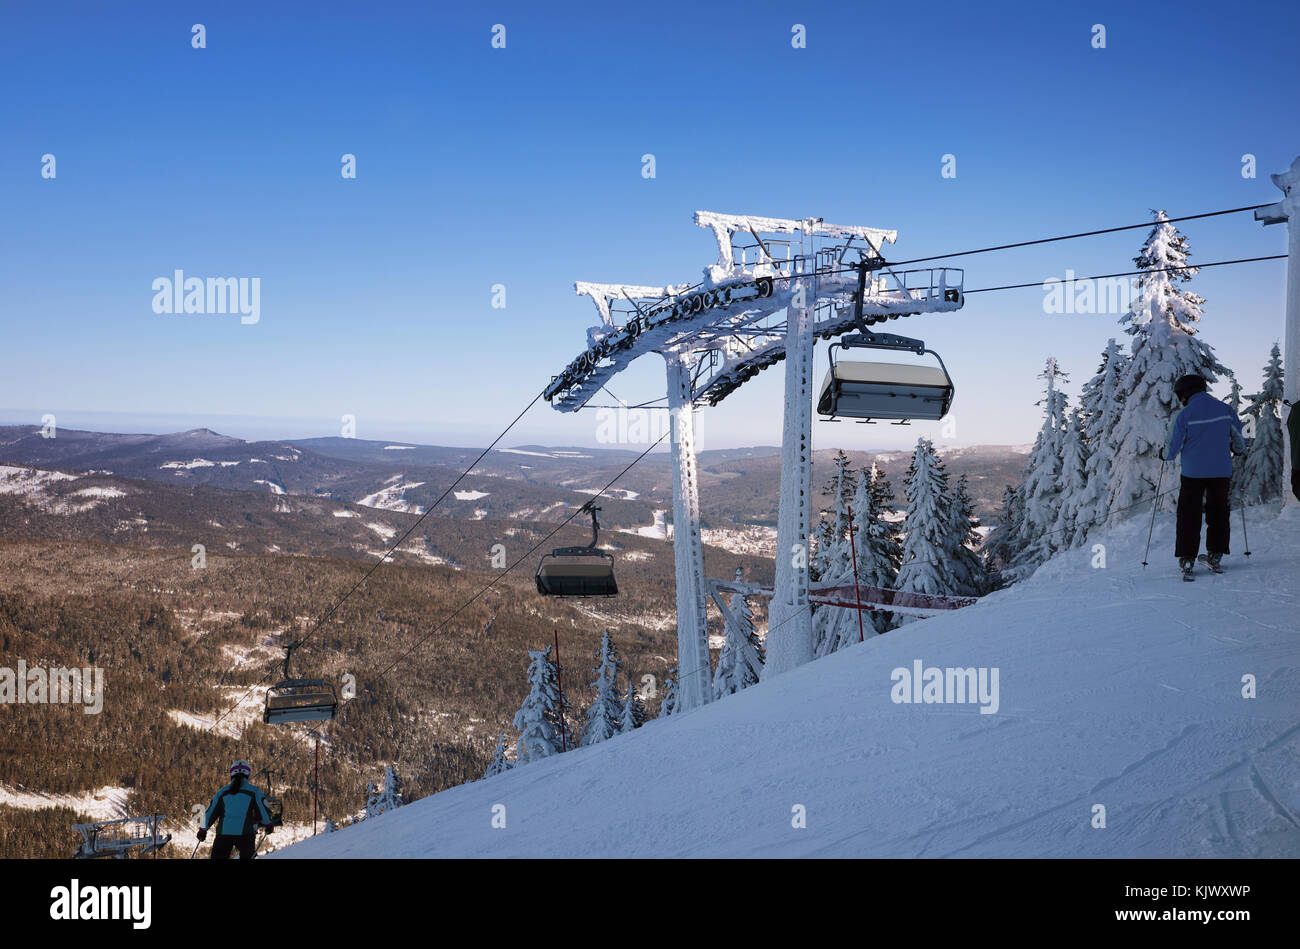 Mountain ski resort, la vista dalla cima delle piste della valle. sciatori su una pendenza ripida. Il montante per lo ski lift. sport d'inverno. Foto Stock